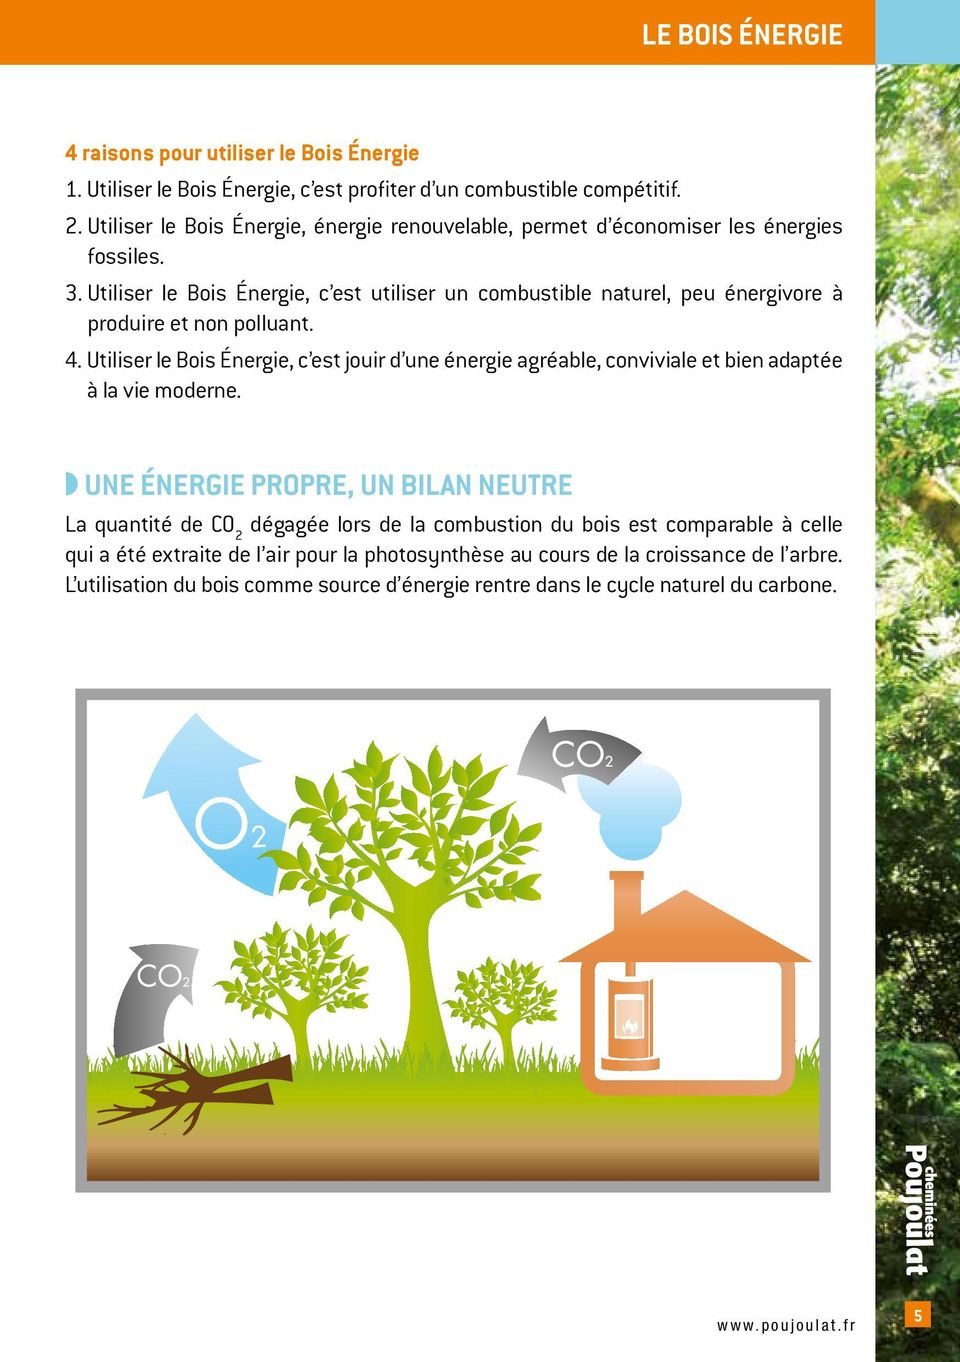 Utiliser le Bois Énergie, c est utiliser un combustible naturel, peu énergivore à produire et non polluant. 4.